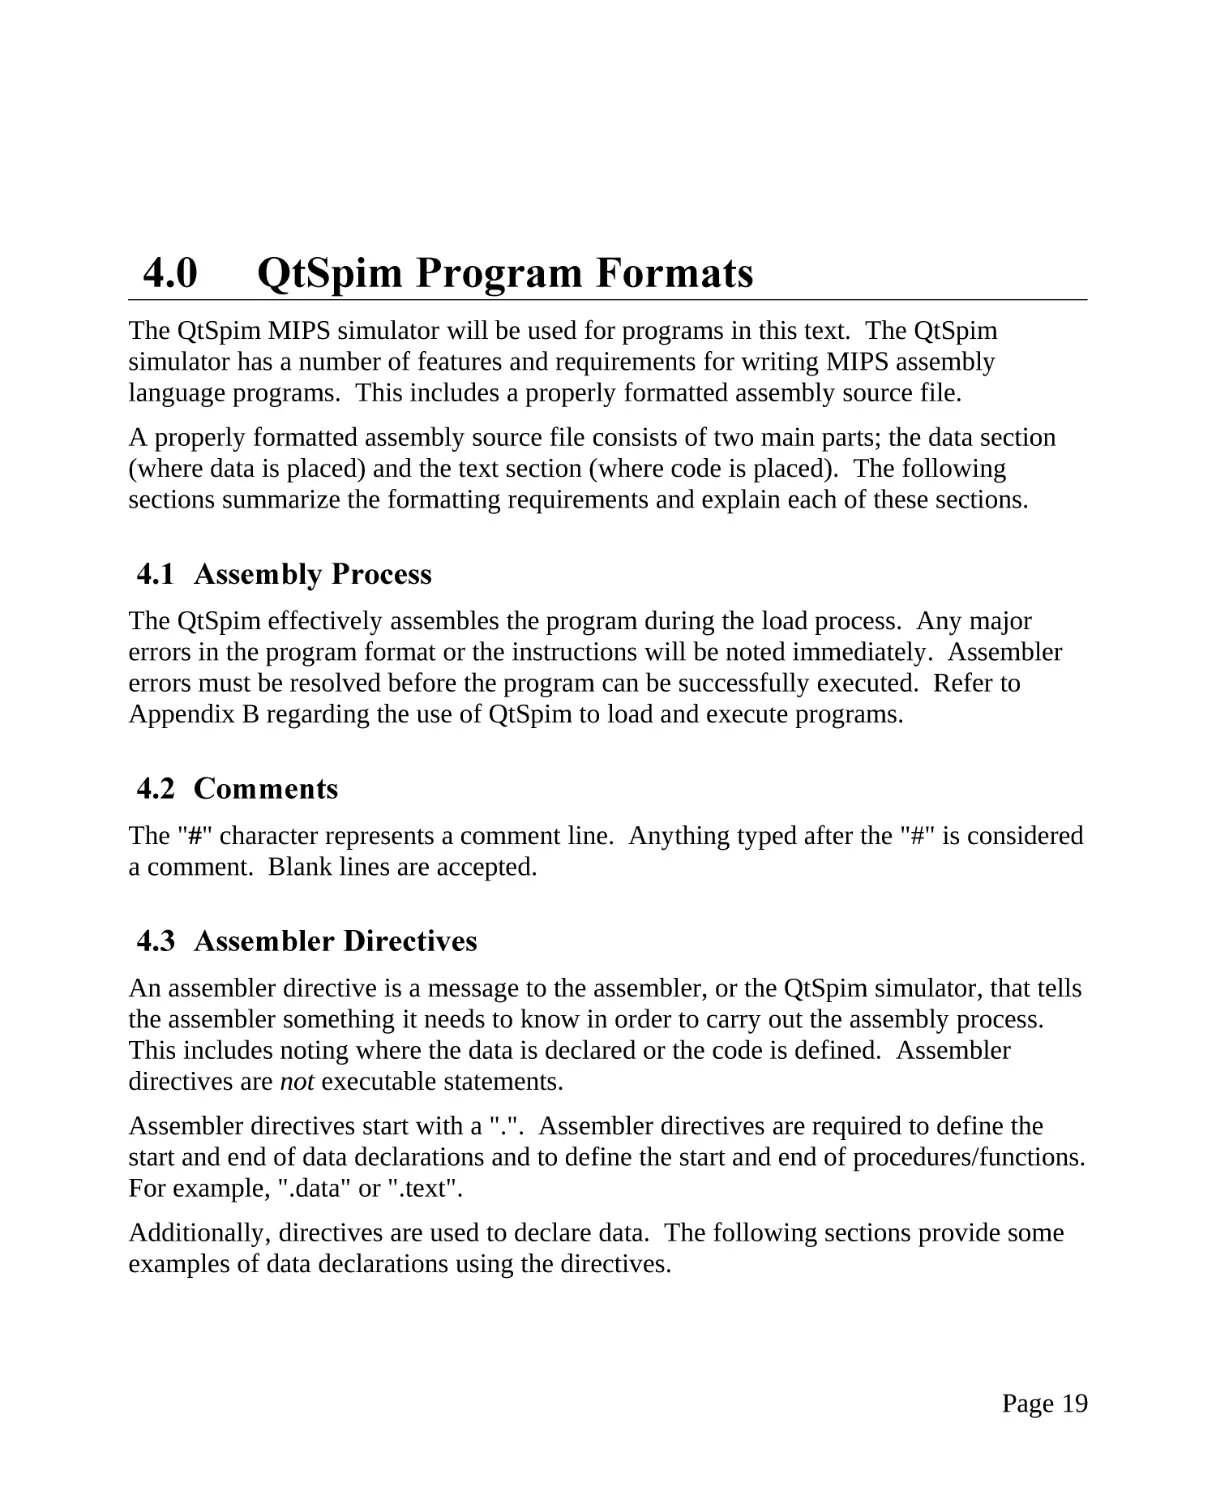 4.0 QtSpim Program Formats
4.1 Assembly Process
4.2 Comments
4.3 Assembler Directives